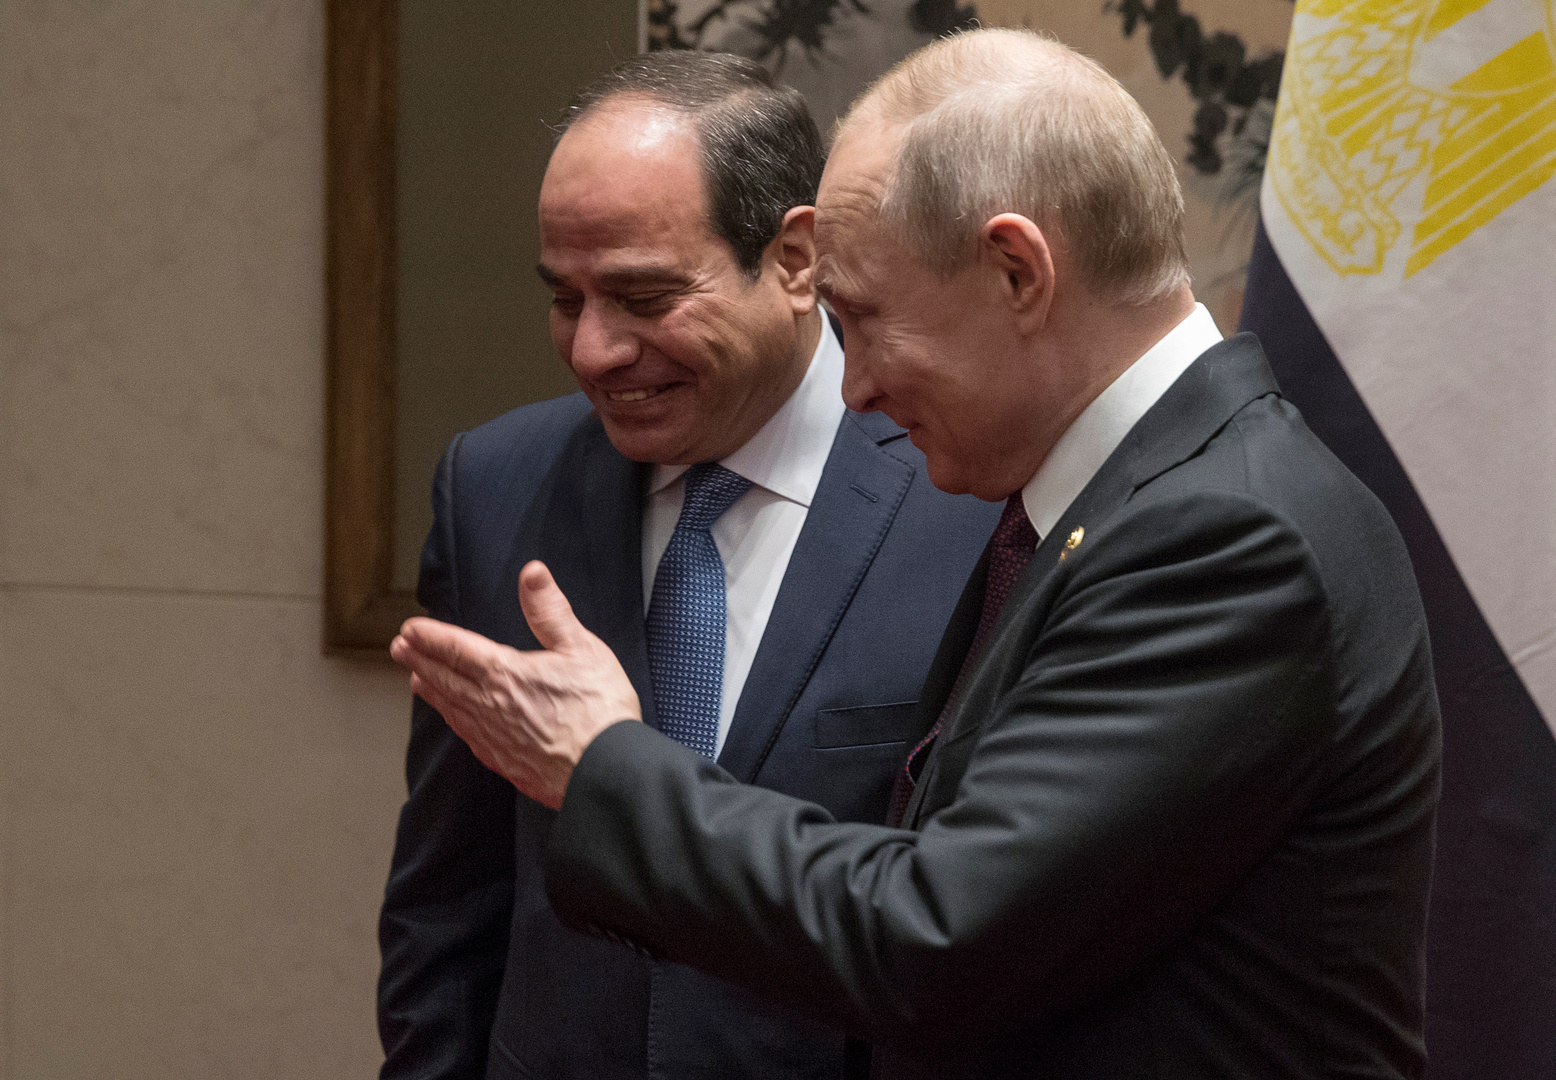 اتفاقان تاريخيان بين مصر وروسيا خلال 24 يحدثان تغييرات كبيرة